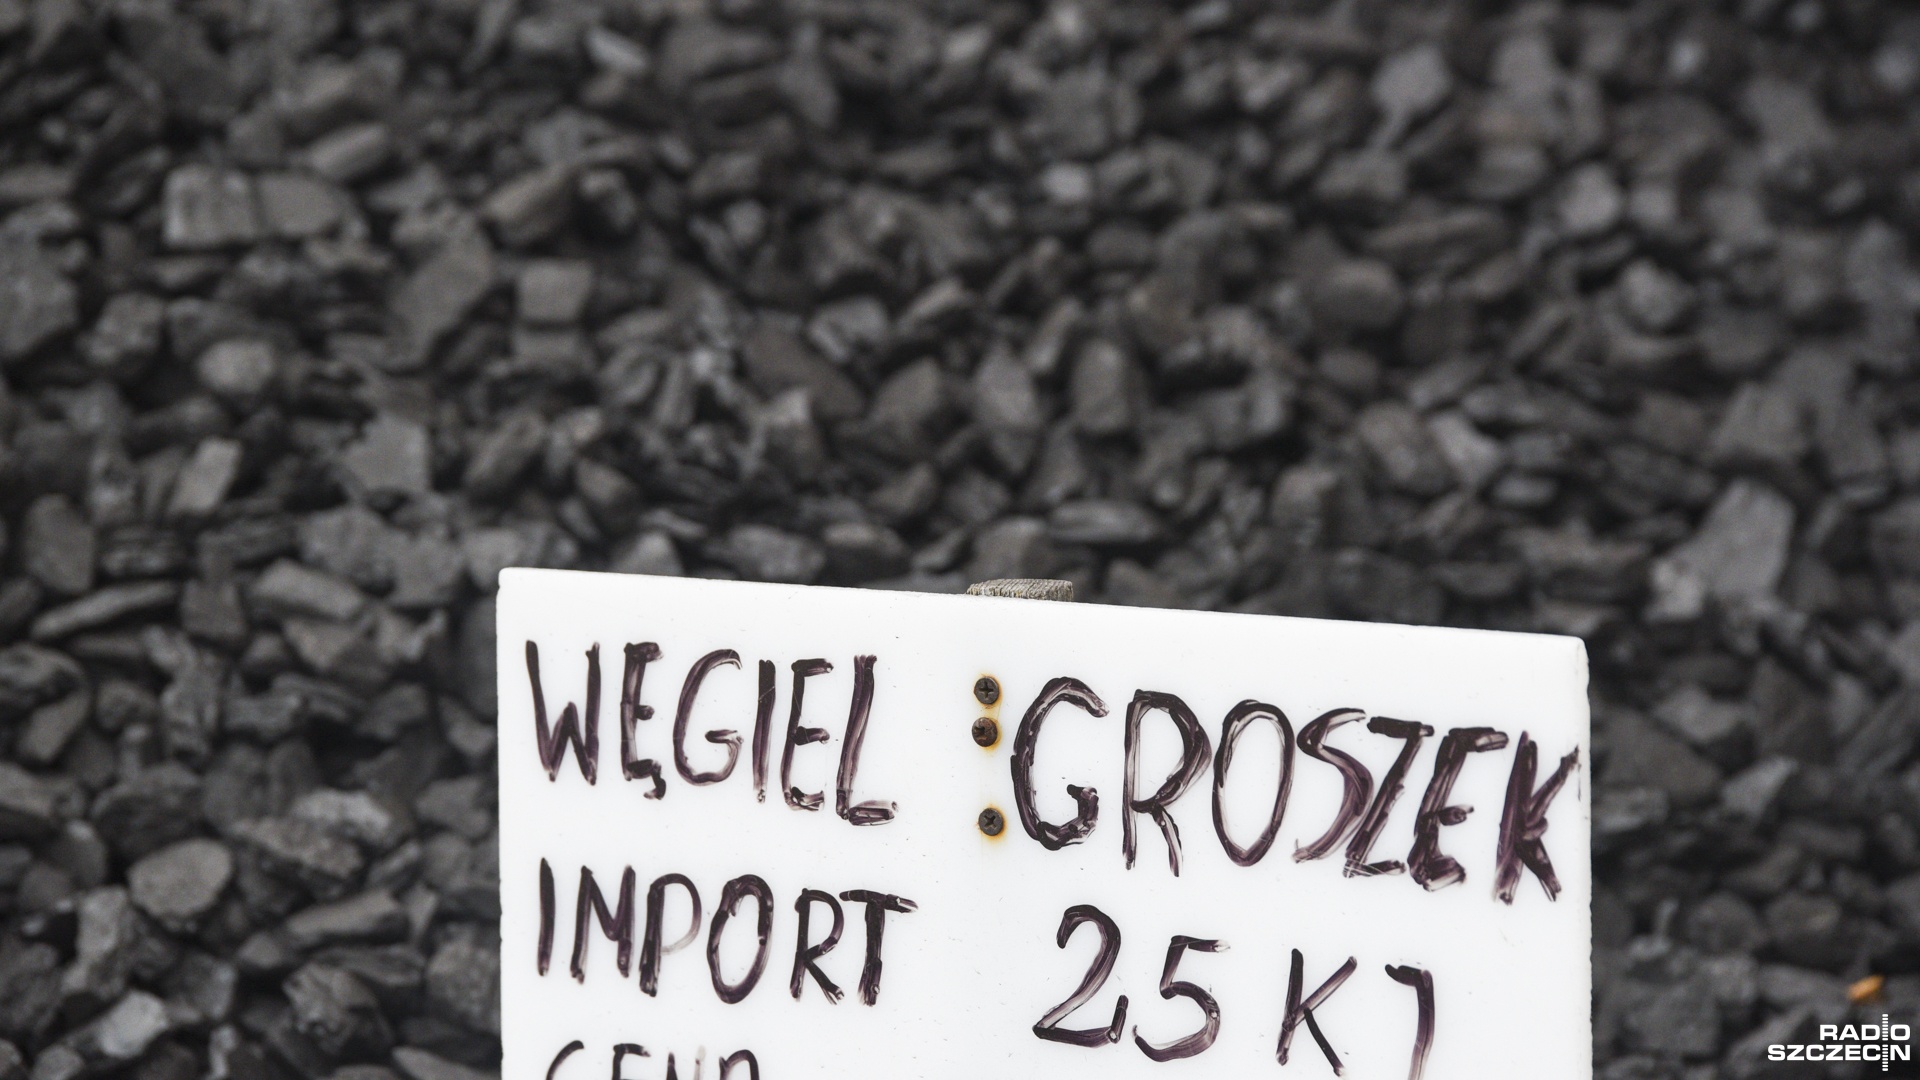 Gościno w powiecie kołobrzeskim to kolejna gmina, która rozpoczyna sprzedaż tańszego węgla.